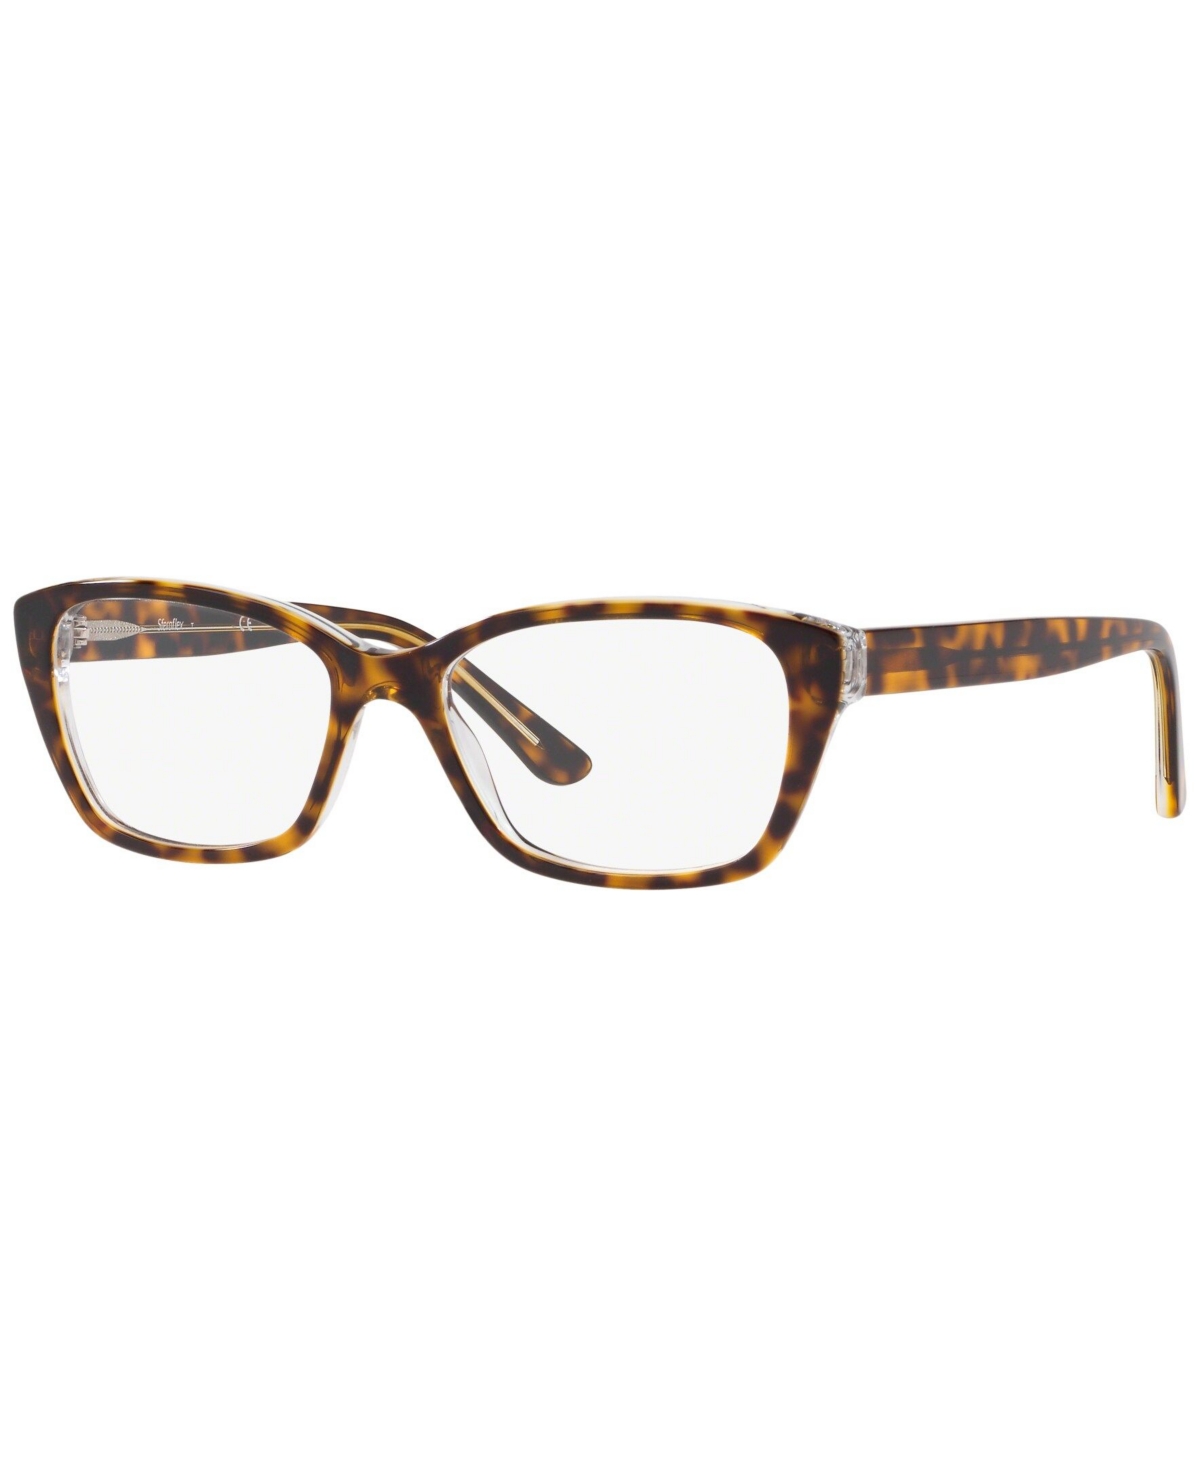 SF1575 Women's Butterfly Eyeglasses - Bordeaux